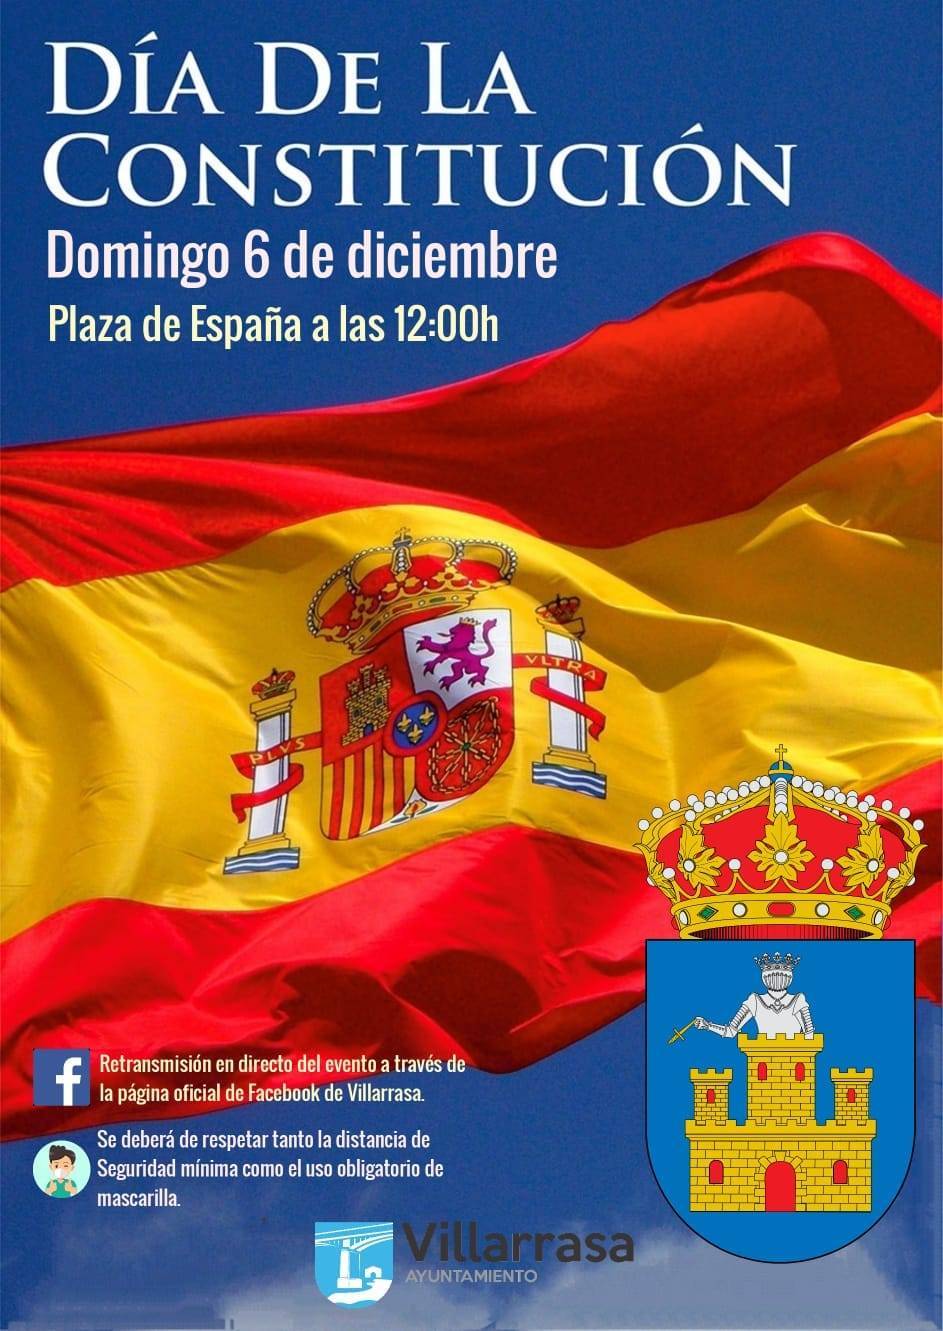 Día de la Constitución (2020) - Villarrasa (Huelva)